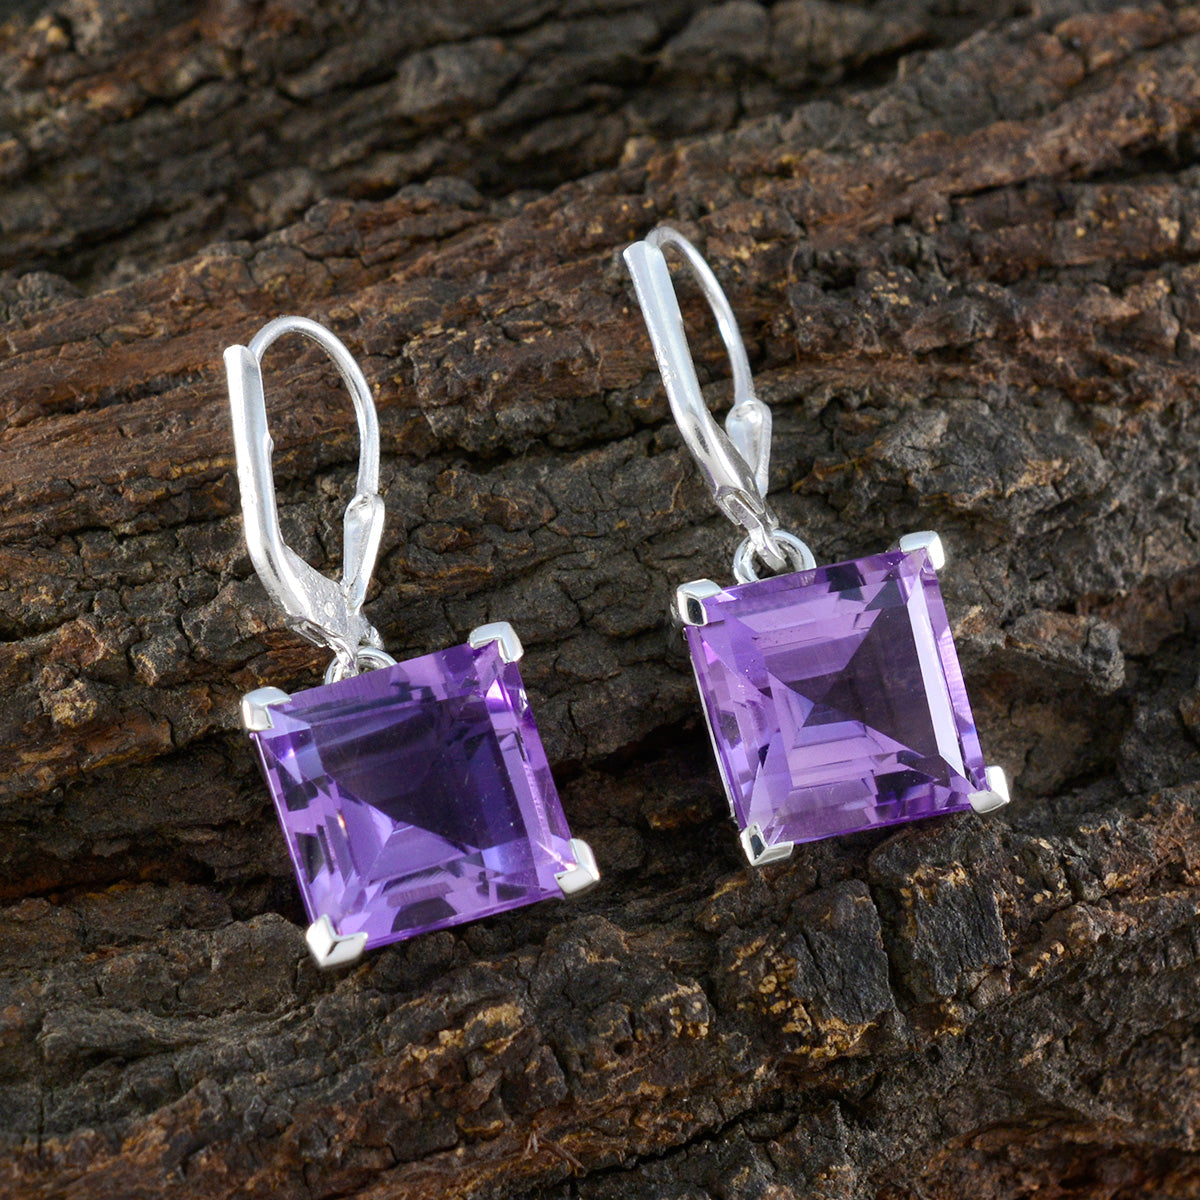 Riyo Spunky Sterling Silver Earring For Female Amethyst Earring Bezel Setting Purple Earring Dangle Earring